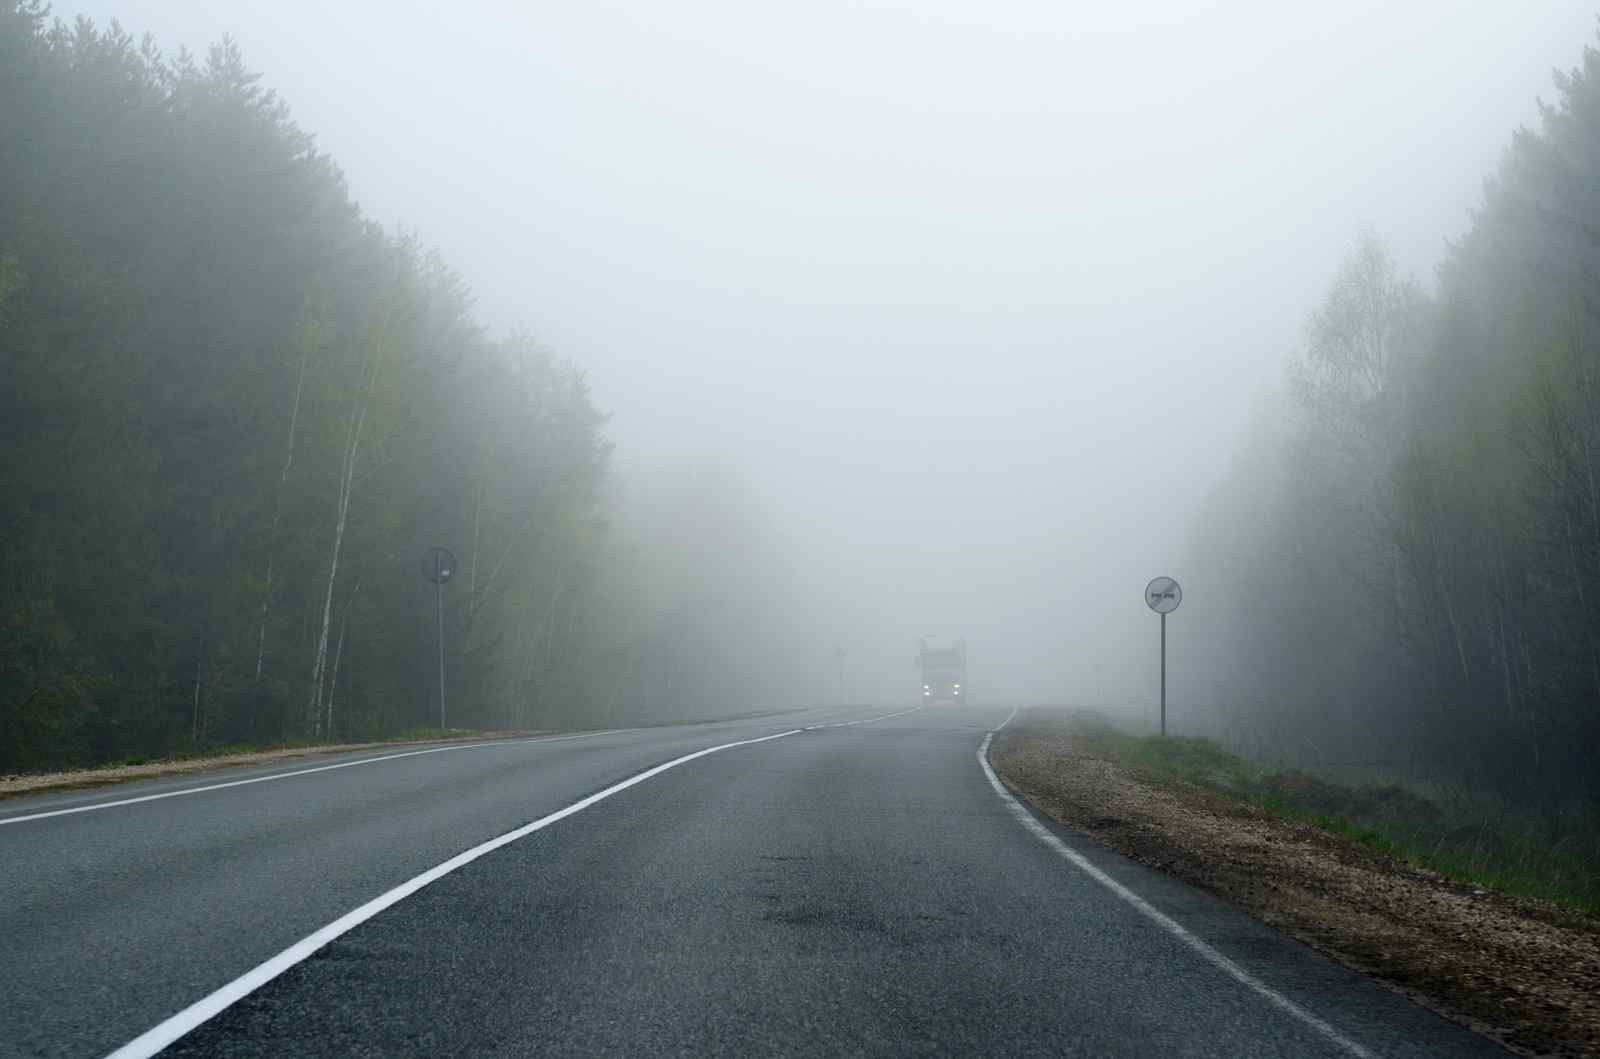 Прикарпатців попереджають про погану видимість на дорогах через туман